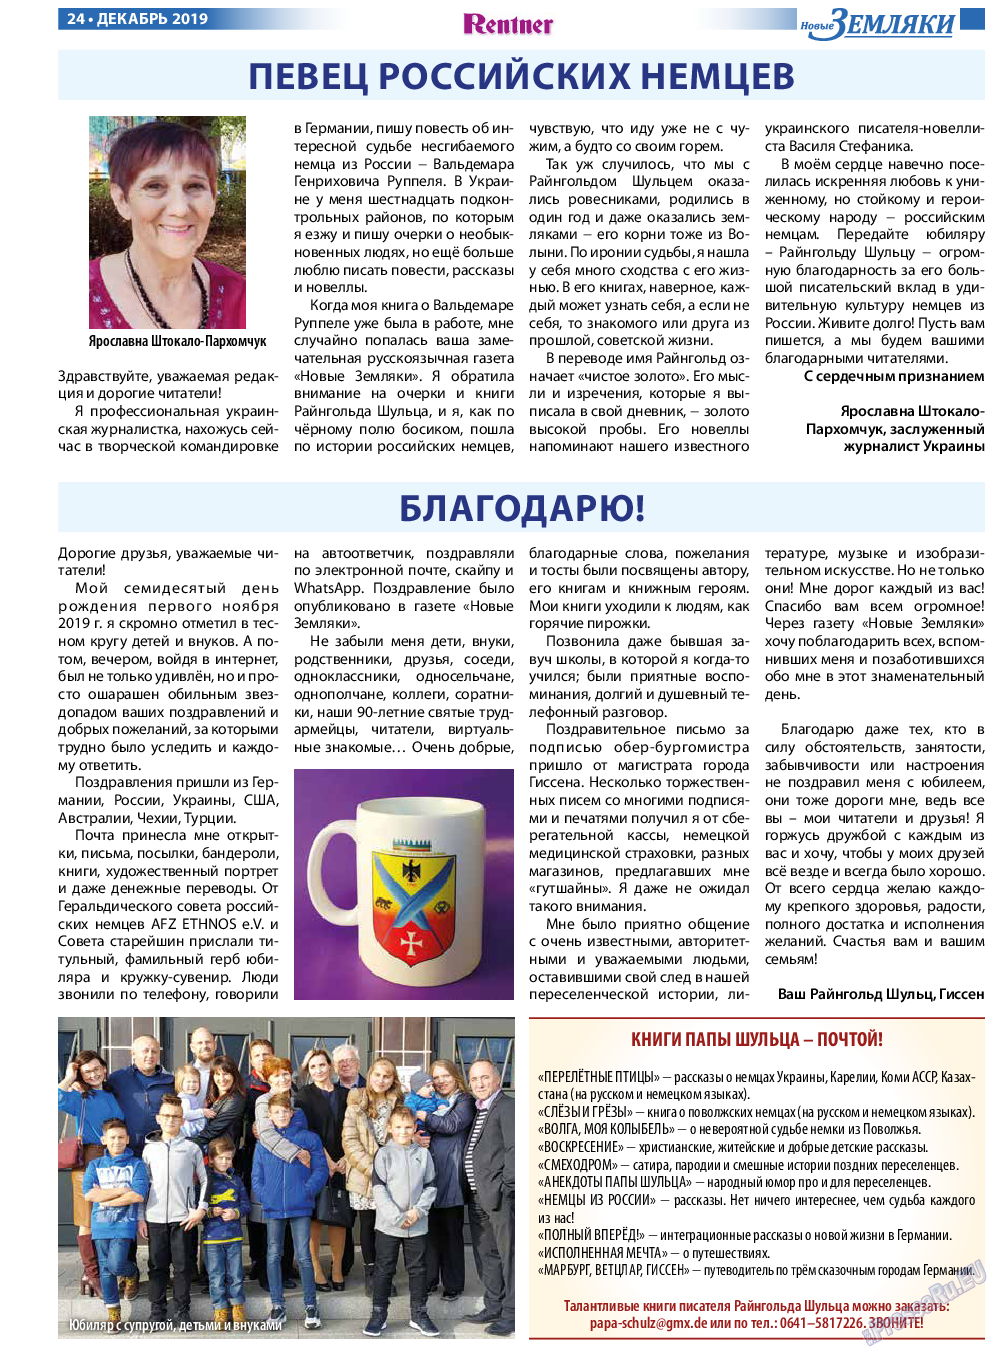 Новые Земляки, газета. 2019 №12 стр.24